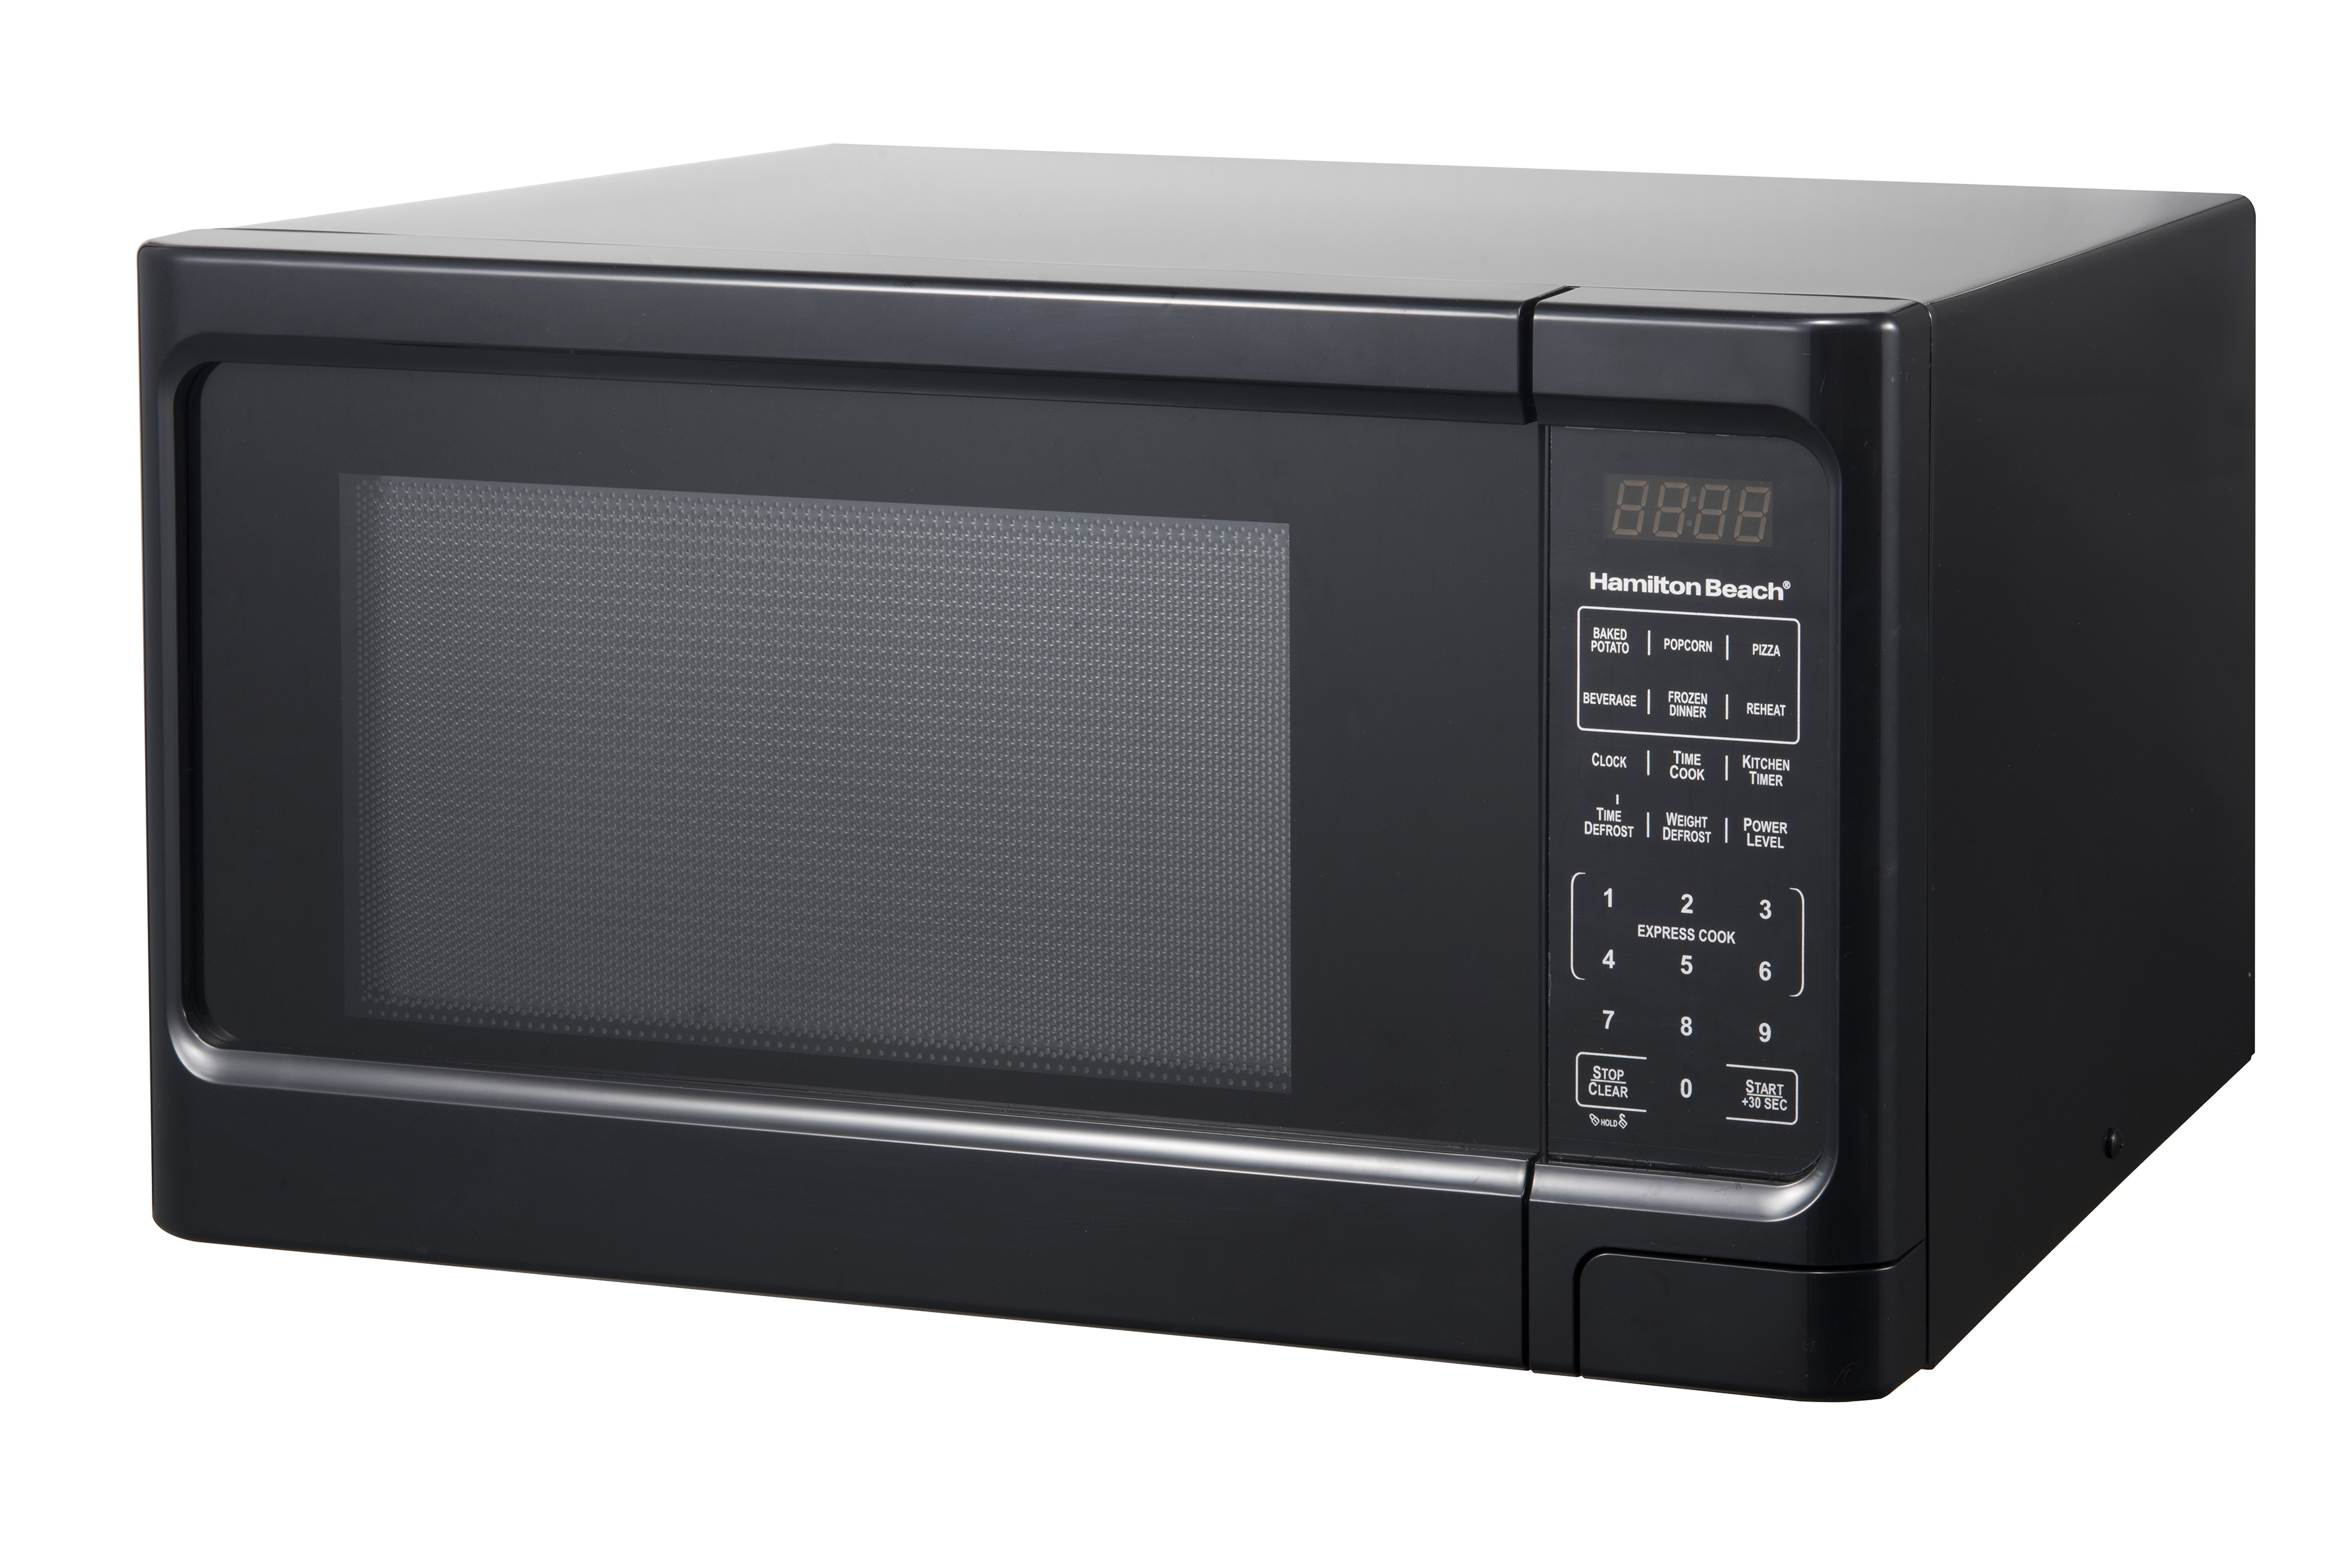 10 Best Countertop Microwaves of 2023